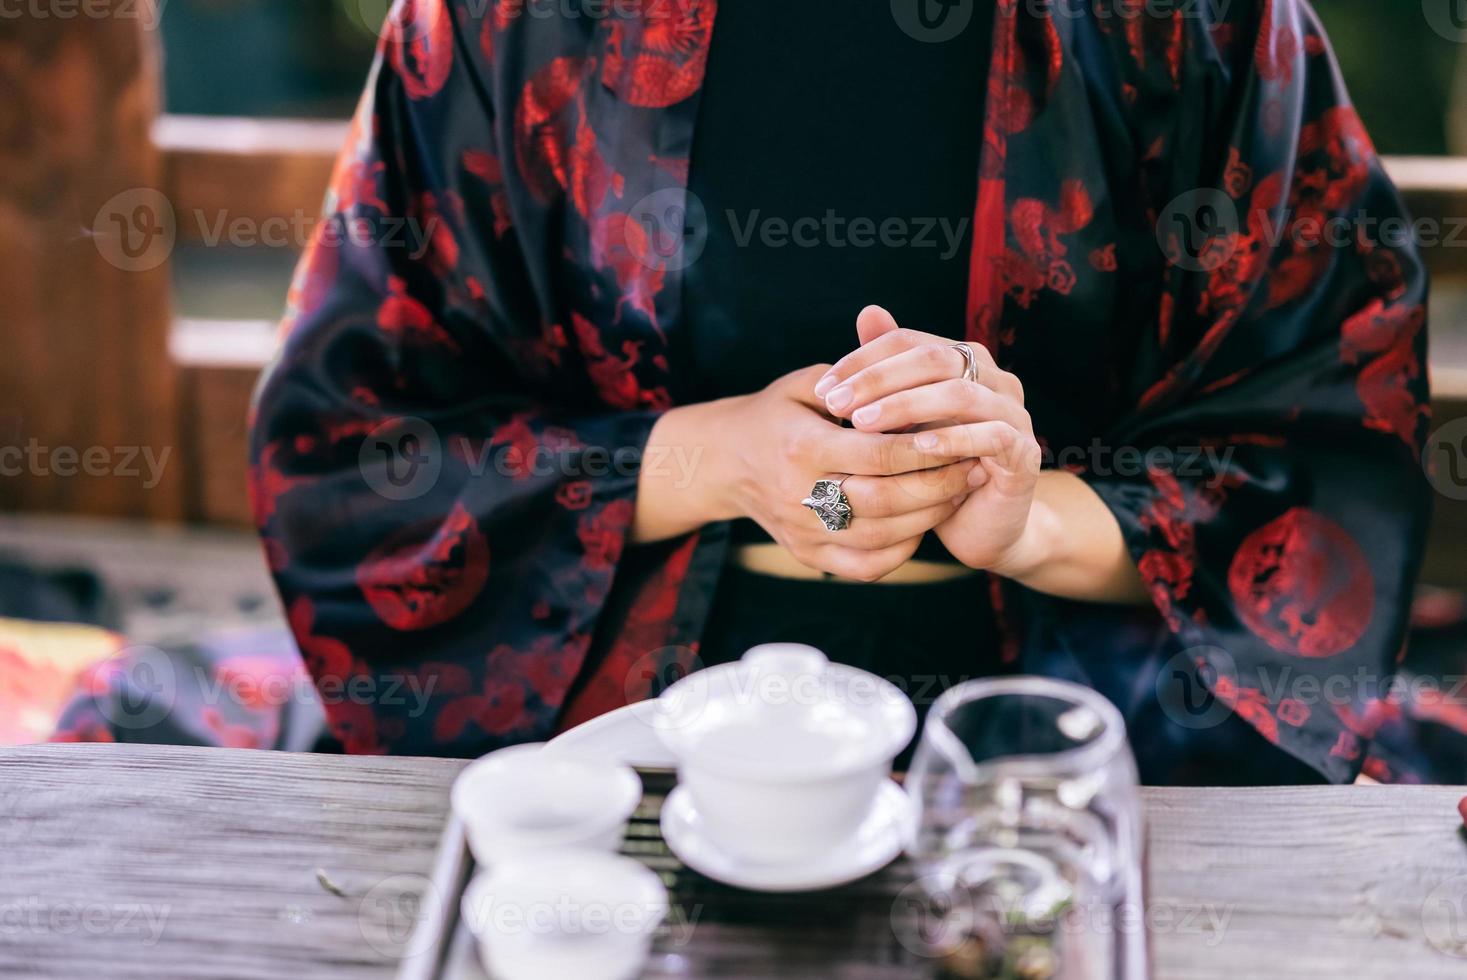 proceso de preparación de té. mujer tomando té de hierbas foto